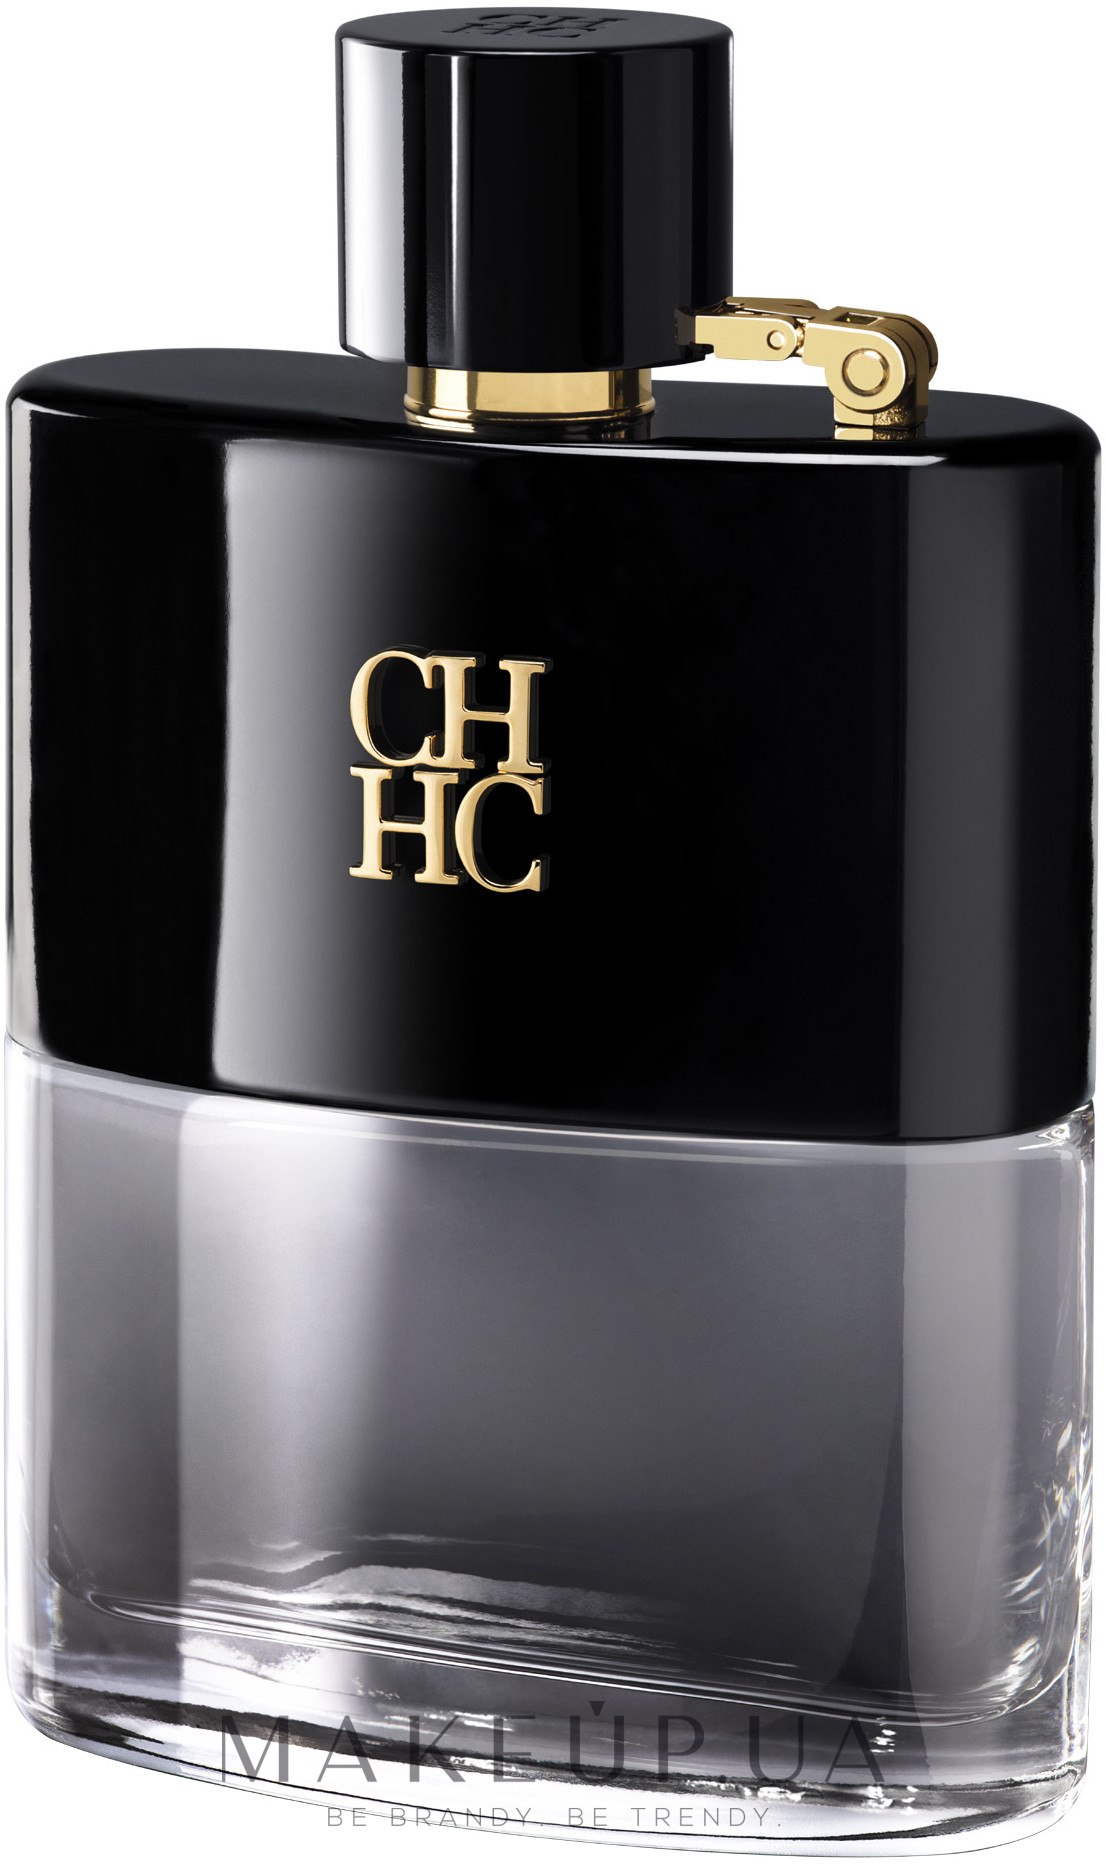 Самые стойкие мужские парфюмы. Carolina Herrera Ch men. Carolina Herrera "Ch men" 100 ml.